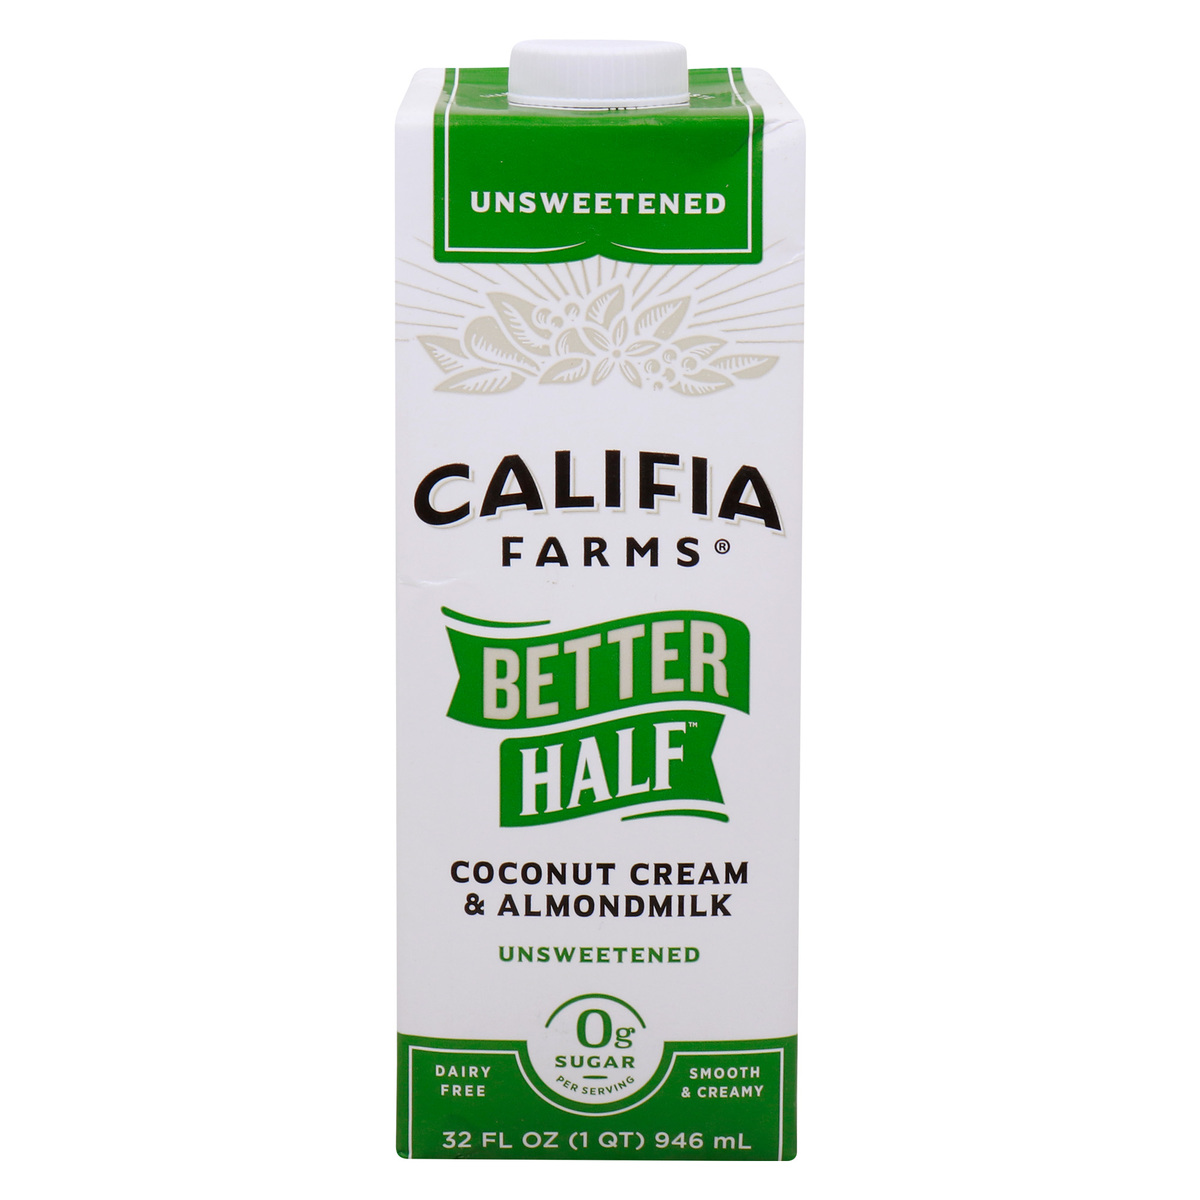 مزارع كاليفيا أفضل نصف كريمة جوز الهند وحليب اللوز غير المحلى، 946 مل